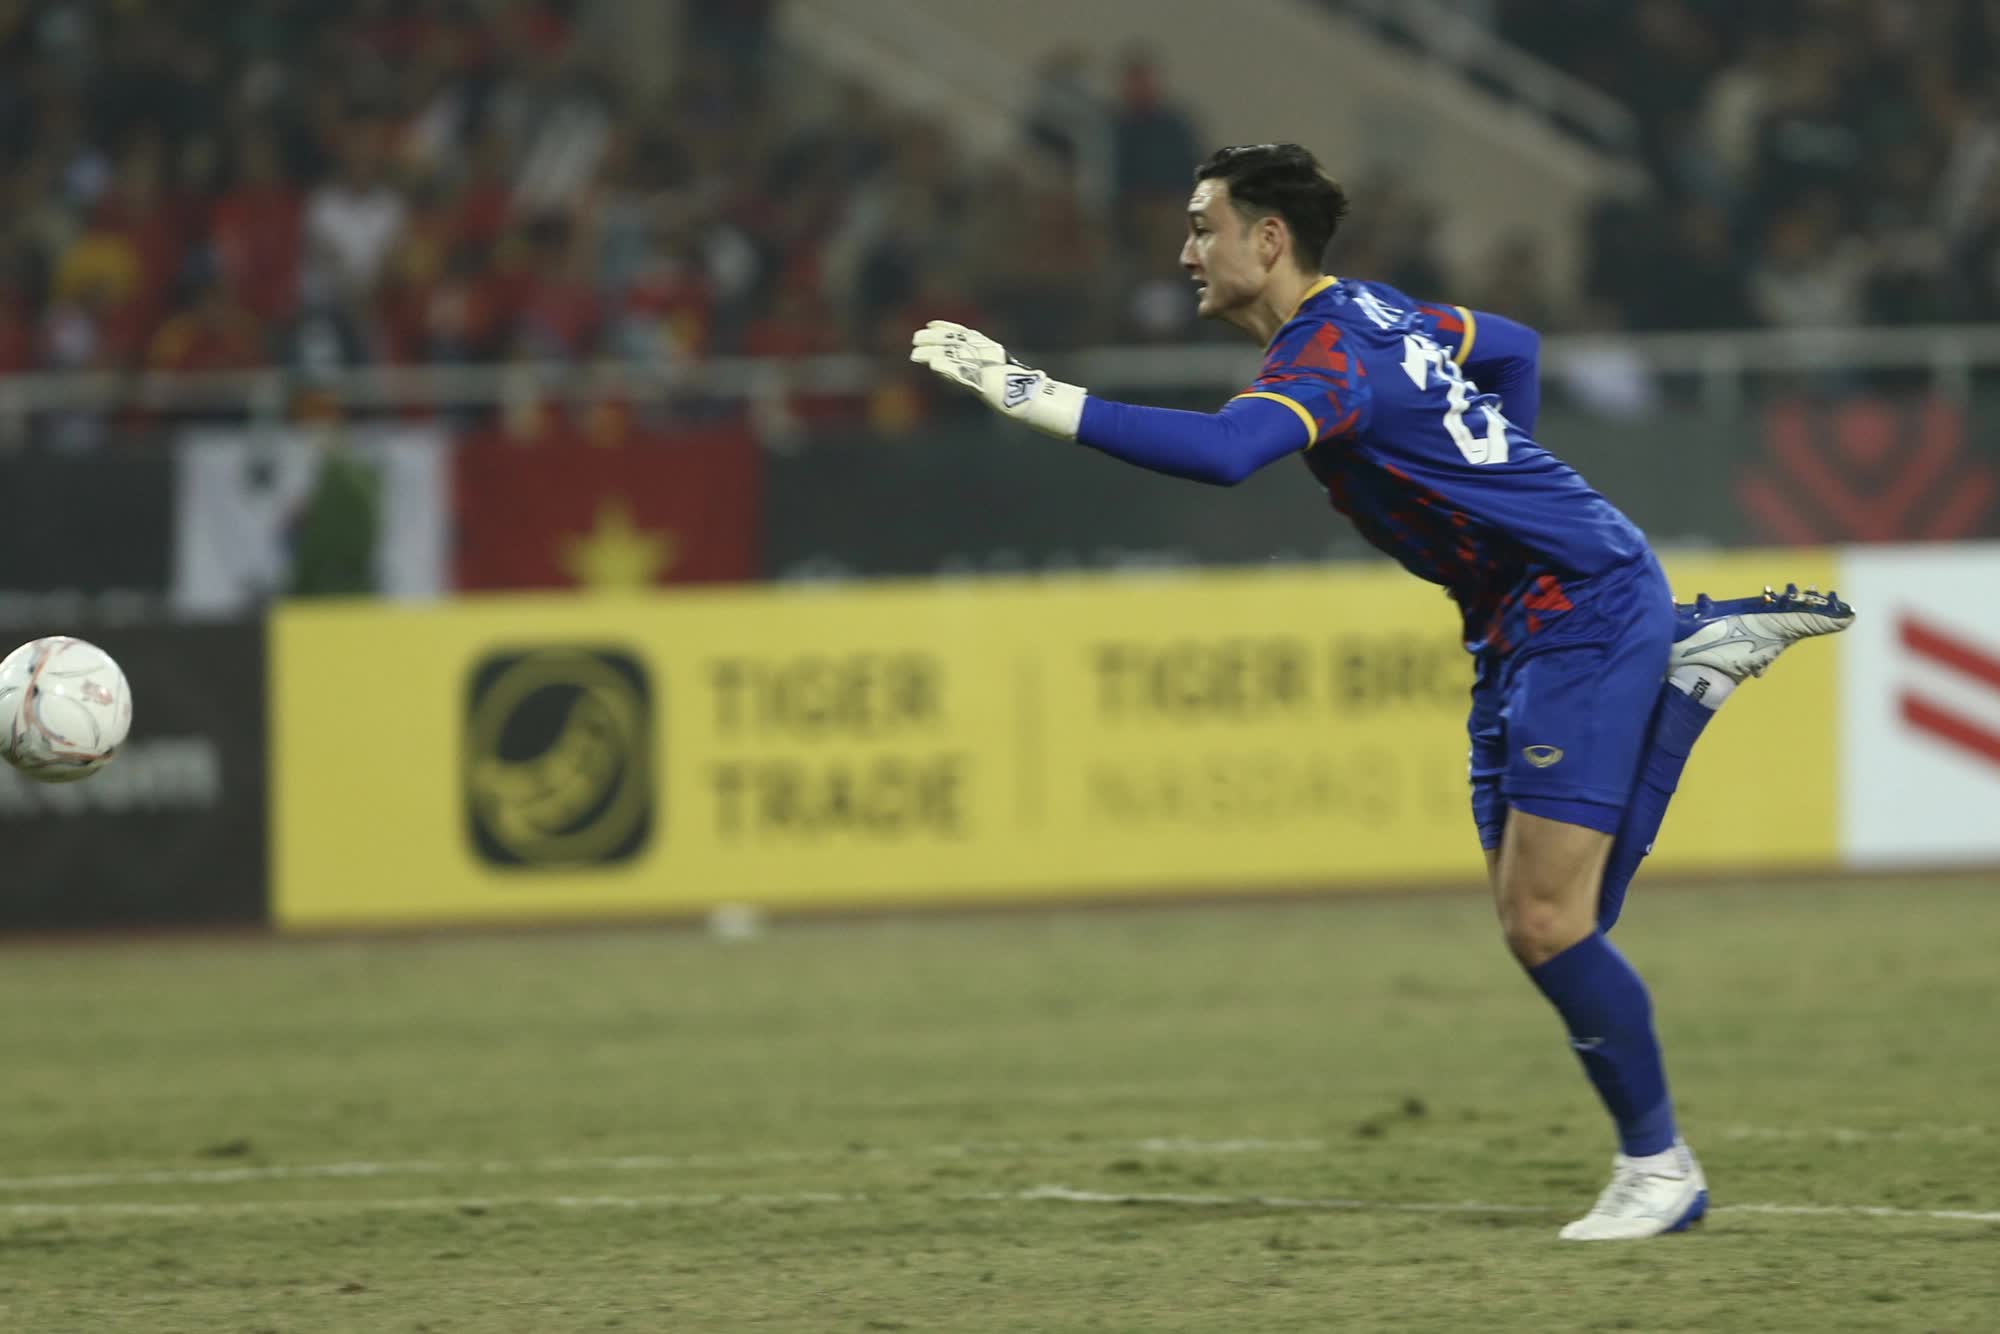 Dẫn trước Myanmar 1-0, HLV Park Hang-seo vẫn liên tục gọi Quang Hải và đồng đội lại gần để dặn dò - Ảnh 7.